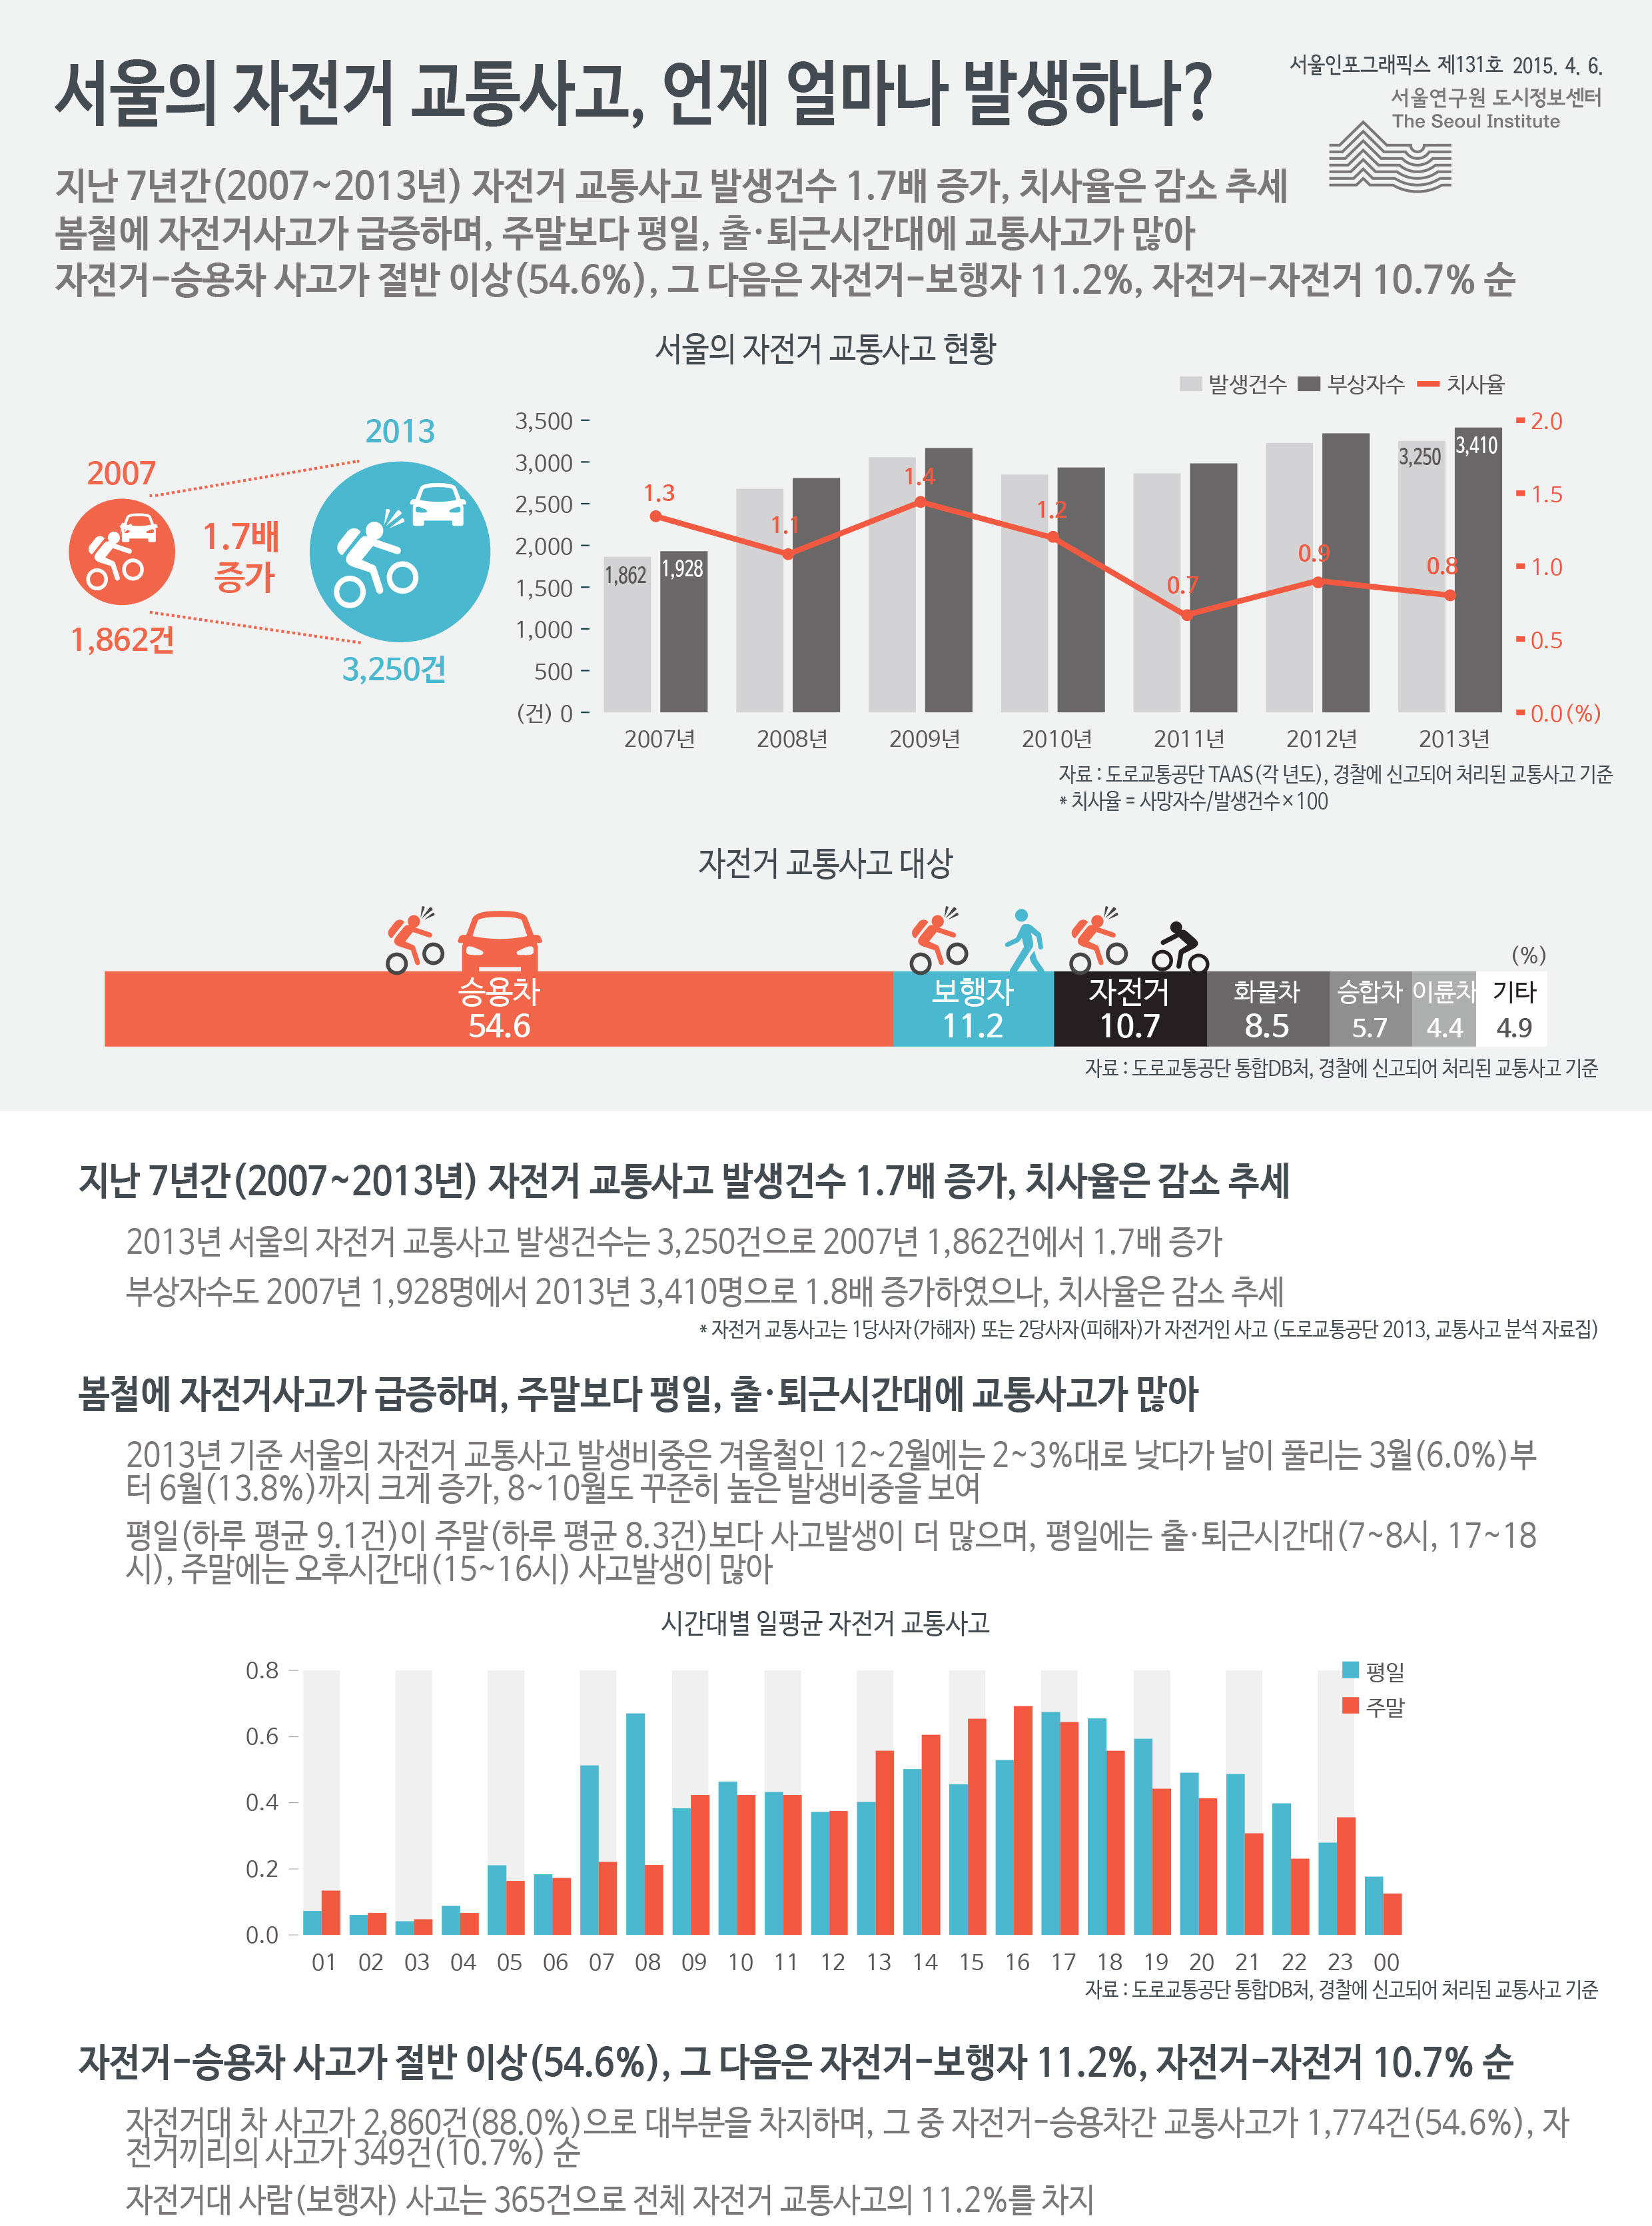 서울의 자전거 교통사고, 언제 얼마나 발생하나? 서울인포그래픽스 제131호 2015년 4월 6일 지난 7년간(2007~2013년) 자전거 교통사고 발생건수 1.7배 증가, 치사율은 감소 추세. 봄철에 자전거사고가 급증하며, 주말보다 평일, 출·퇴근시간대에 교통사고가 많음. 자전거-승용차 사고가 54.6%로 절반 이상, 그 다음은 자전거-보행자 11.2%, 자전거-자전거 10.7% 순으로 정리 될 수 있습니다. 인포그래픽으로 제공되는 그래픽은 하단에 표로 자세히 제공됩니다.